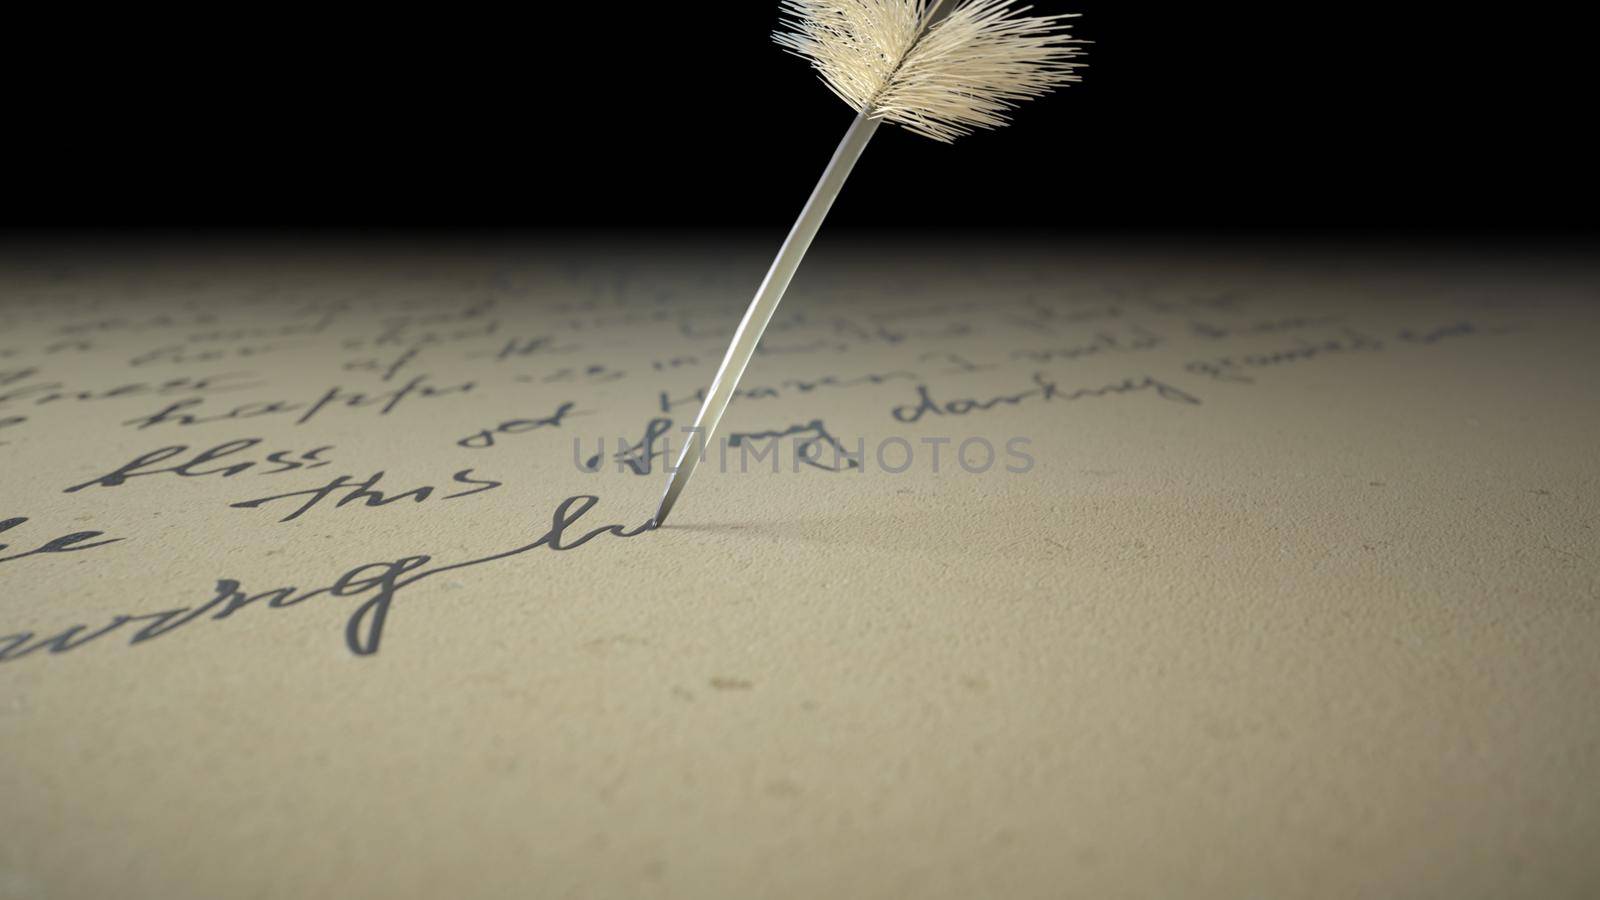 3d render ink pen writes poetry on old paper by studiodav